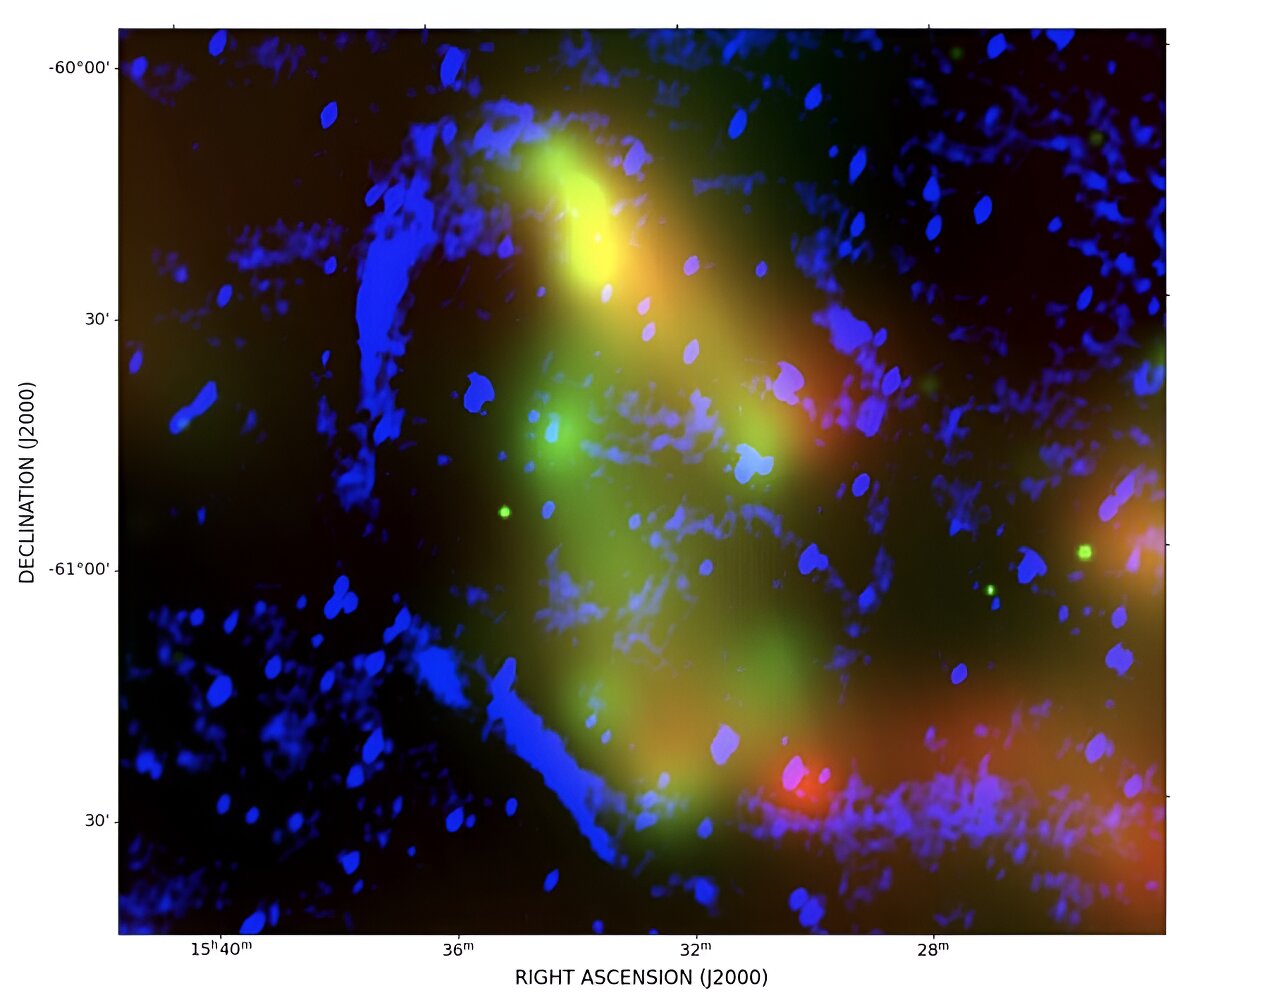 Астрономы из Университета Кертина в Австралии и других странах сообщают об обнаружении нового остатка сверхновой (SNR), расположенного примерно в 3300 световых годах от нас